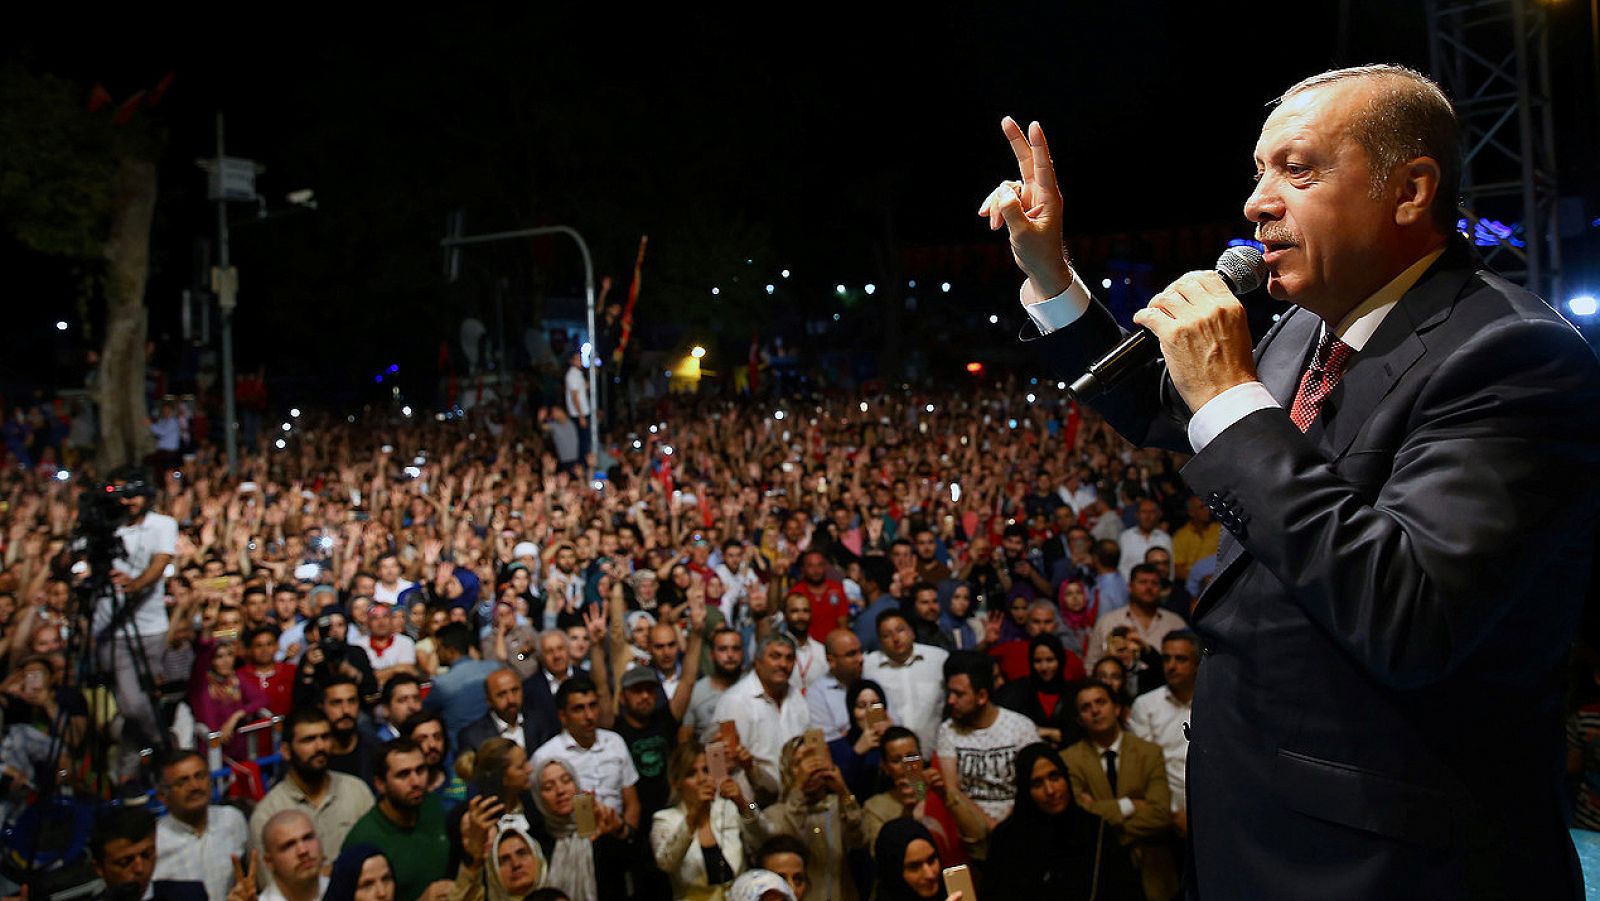 El presidente turco, Receo Tayyip Erdogan, se dirige a la multitud frente a su residencia en Estambul, en la madrugada del 19 de julio de 2016. Kayhan Ozer/Presidencia de Turquía/Reuters